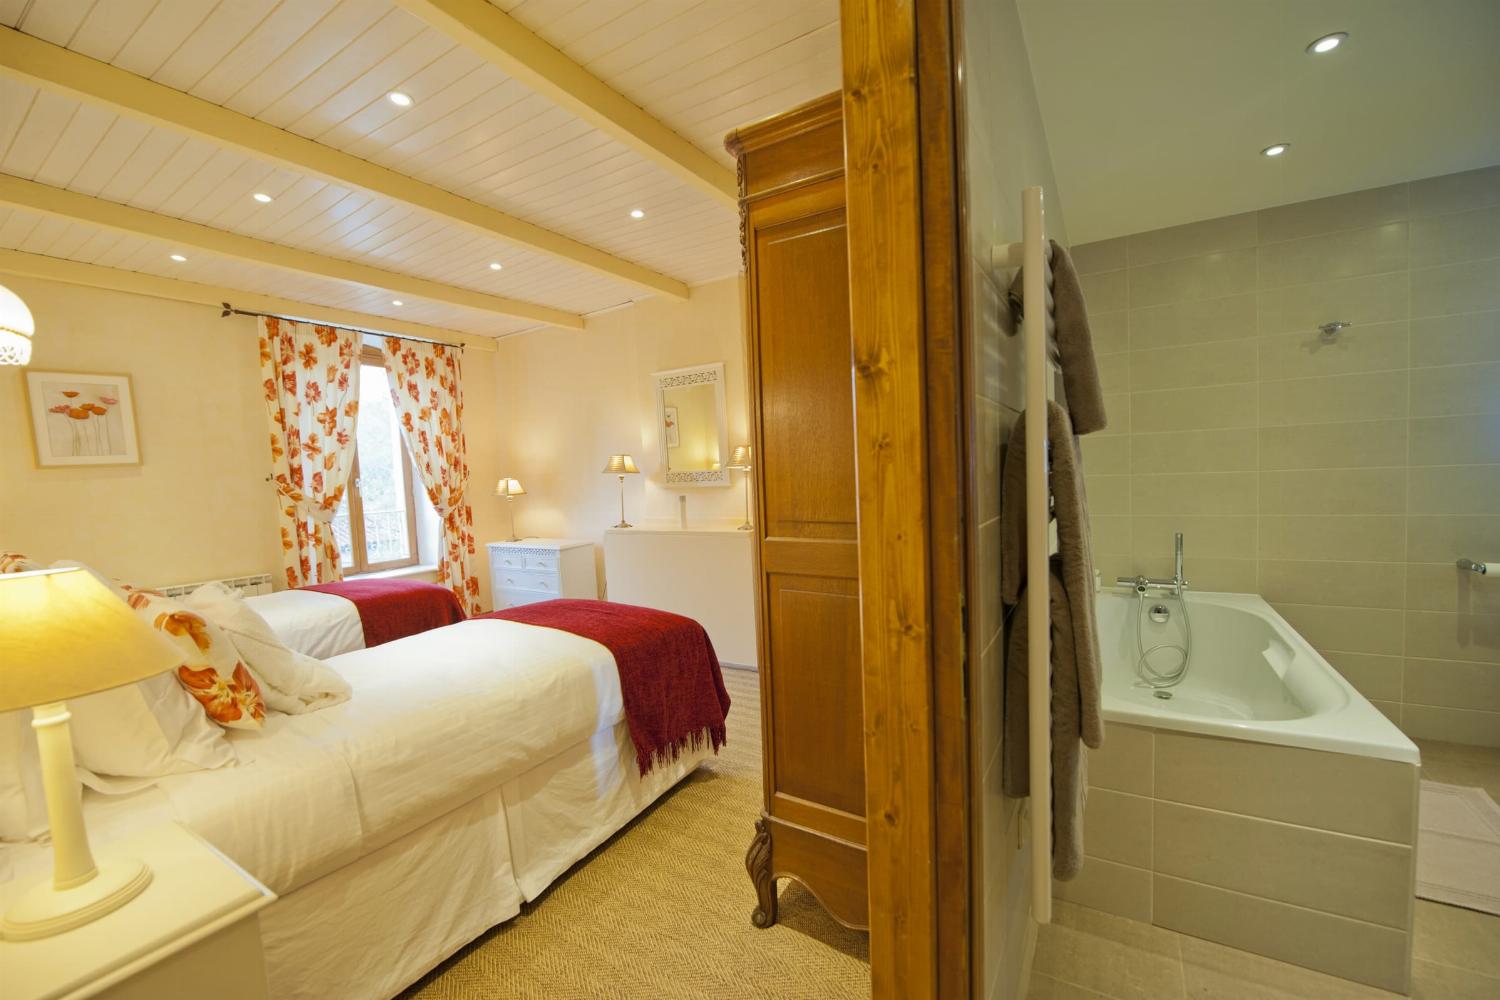 Chambre et salle de bain | Maison de vacances dans le sud de la France